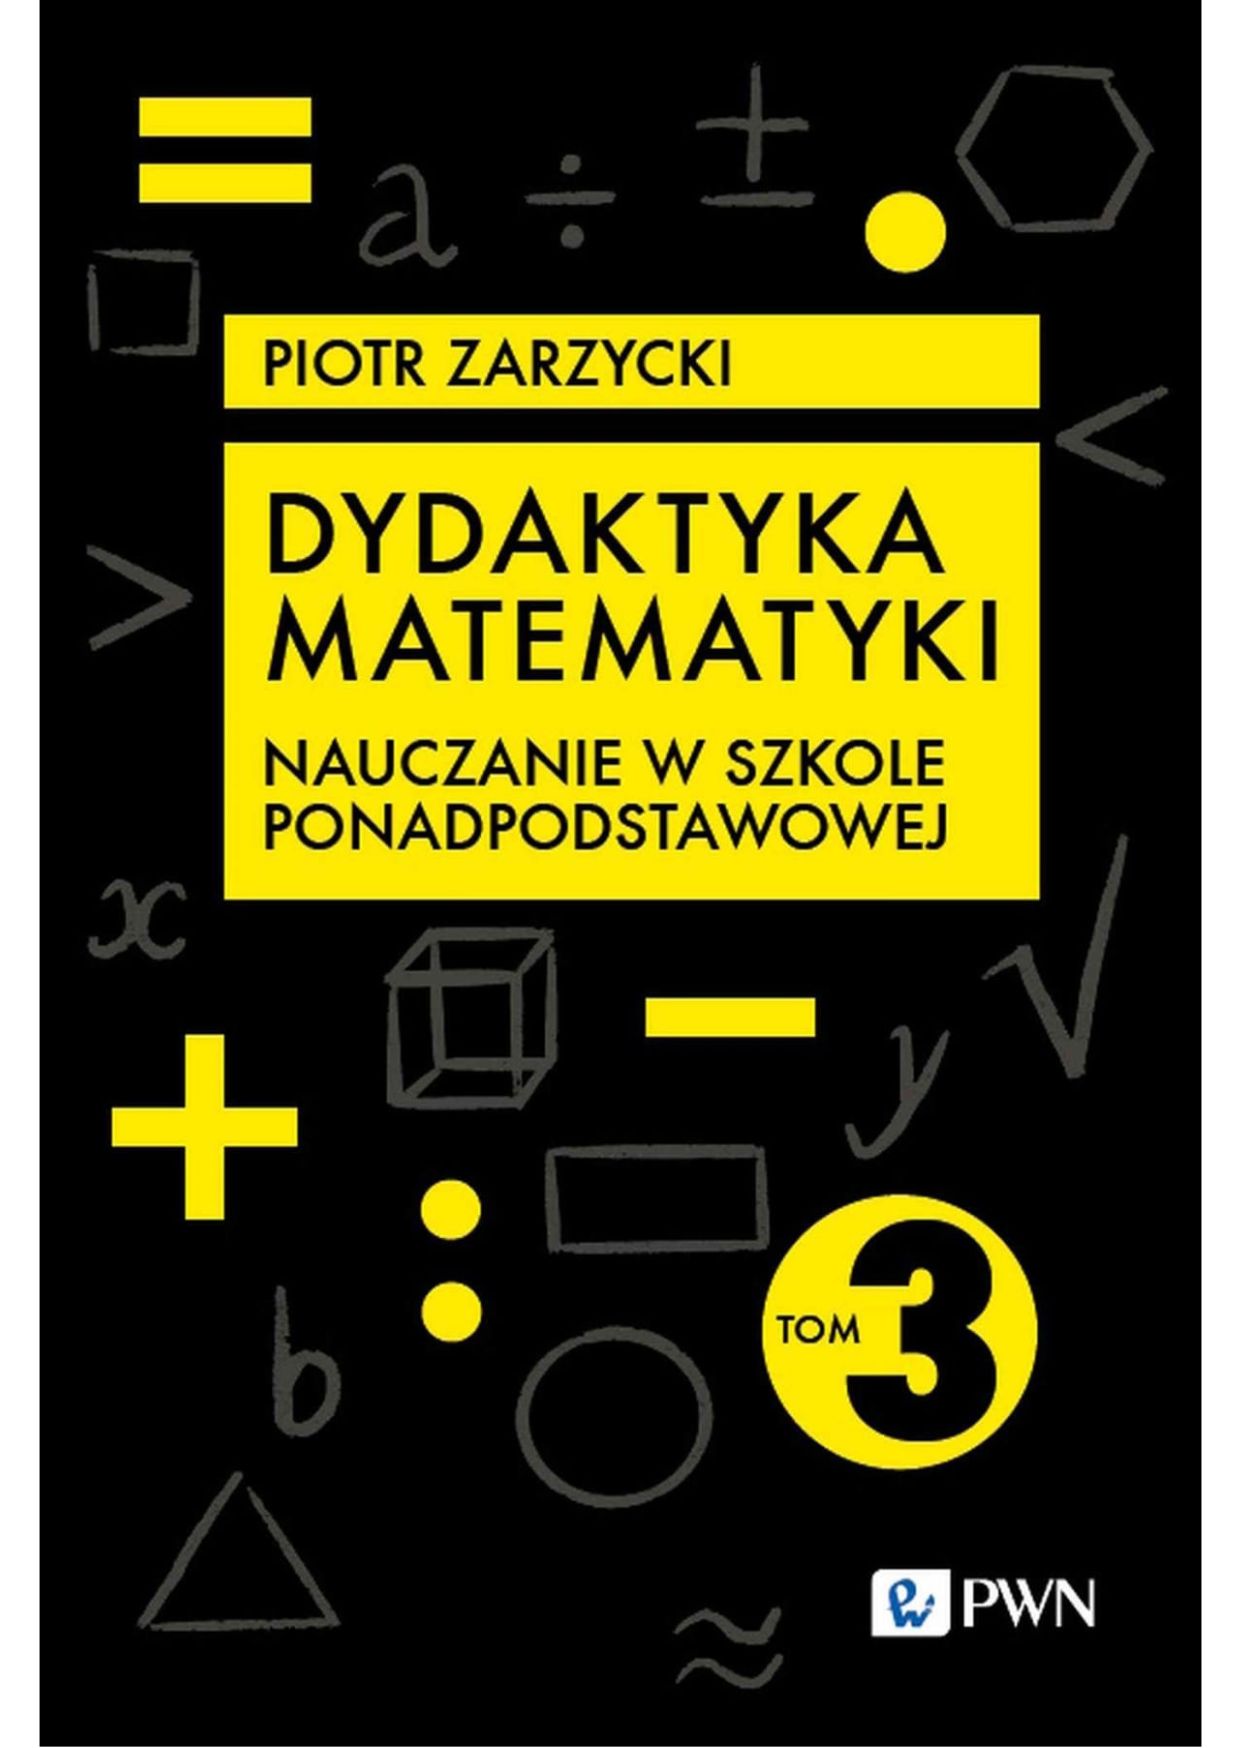 Okładka książki o tytule Dydaktyka matematyki. Tom 3, Nauczanie w szkole ponadpodstawowej 